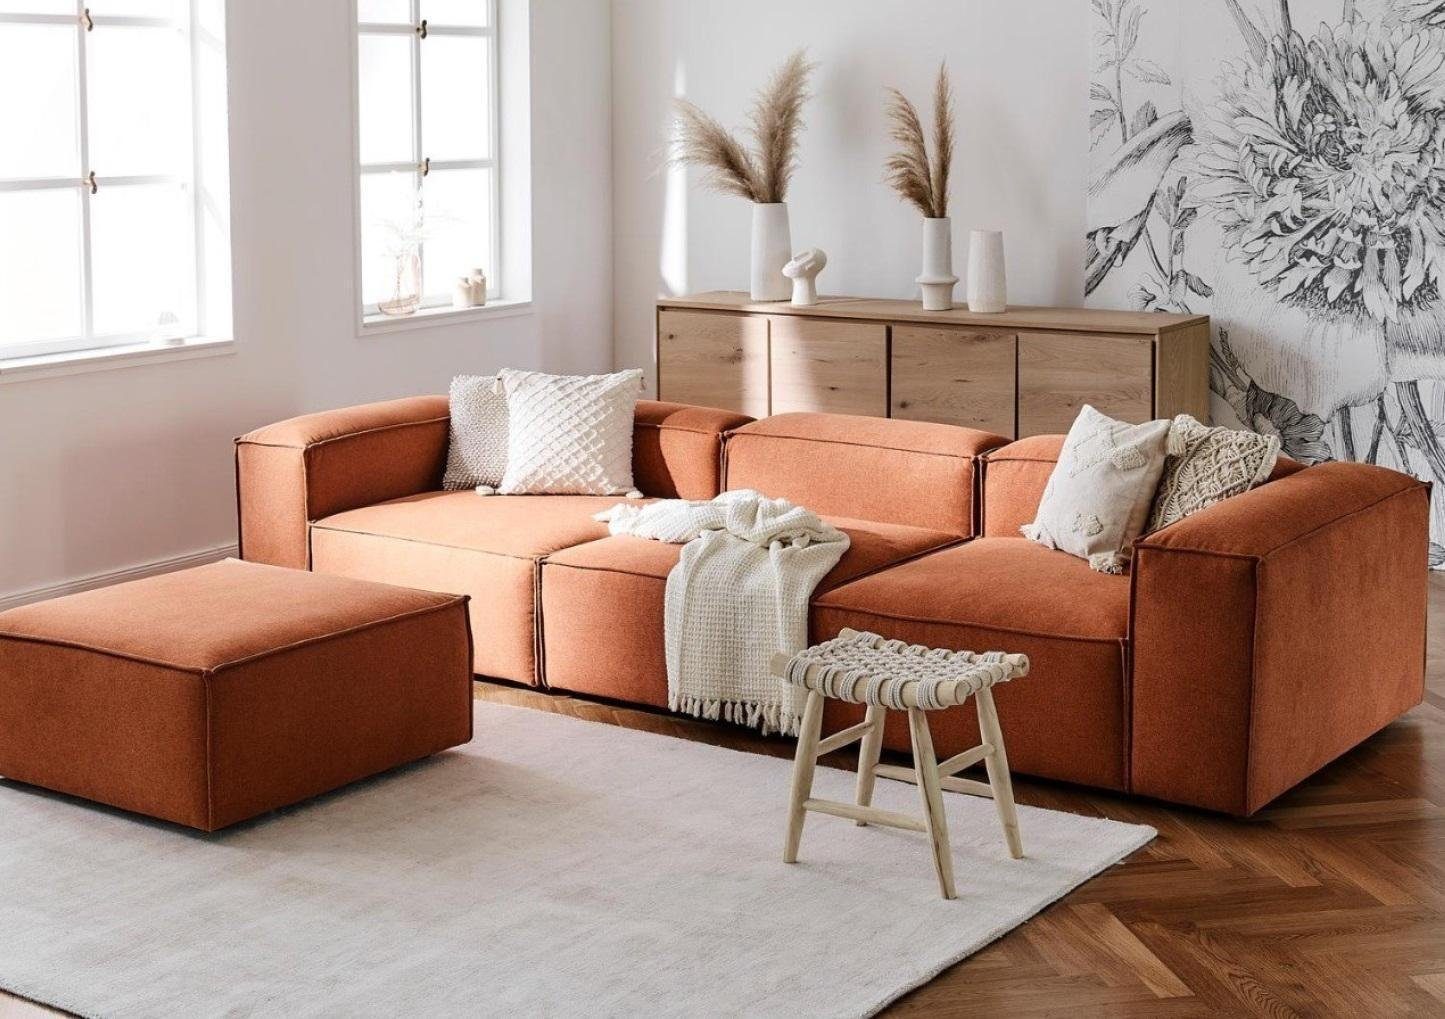 JVmoebel 4-Sitzer Sofa Wohnzimmer Polster Couchen Textil 4Sitzer Stoff Modern Sofas